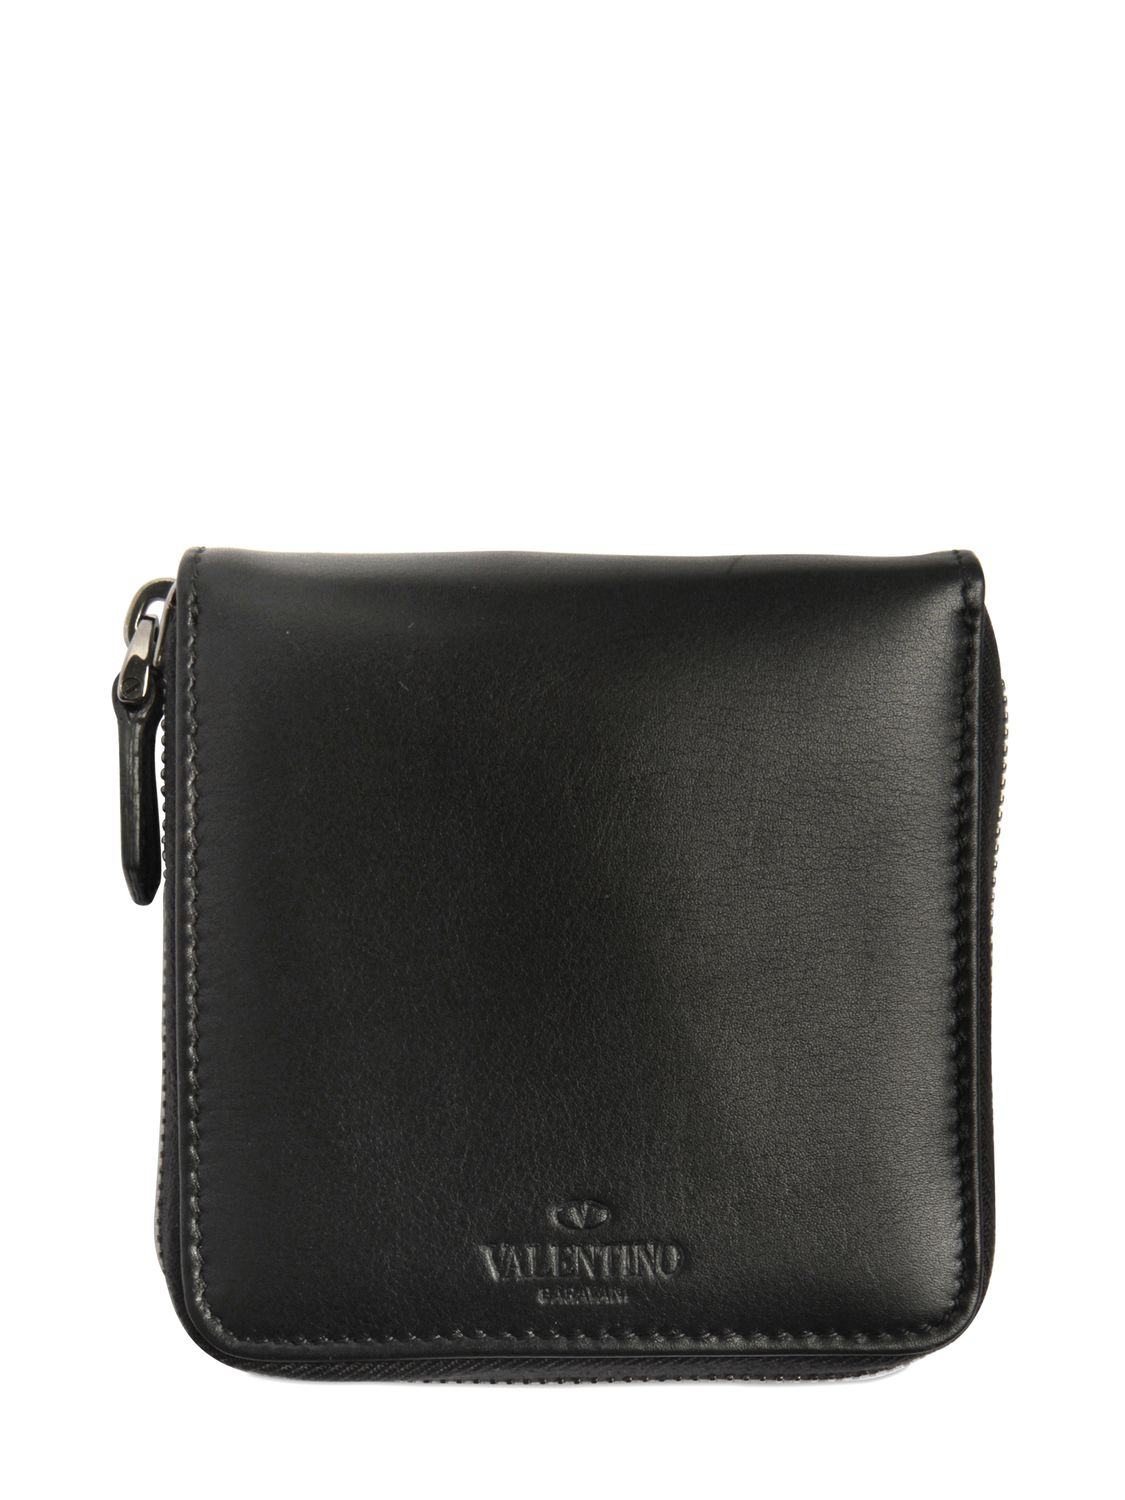 Valentino Noir 2 Studs Small Zip Around Wallet in Black for Men - Lyst